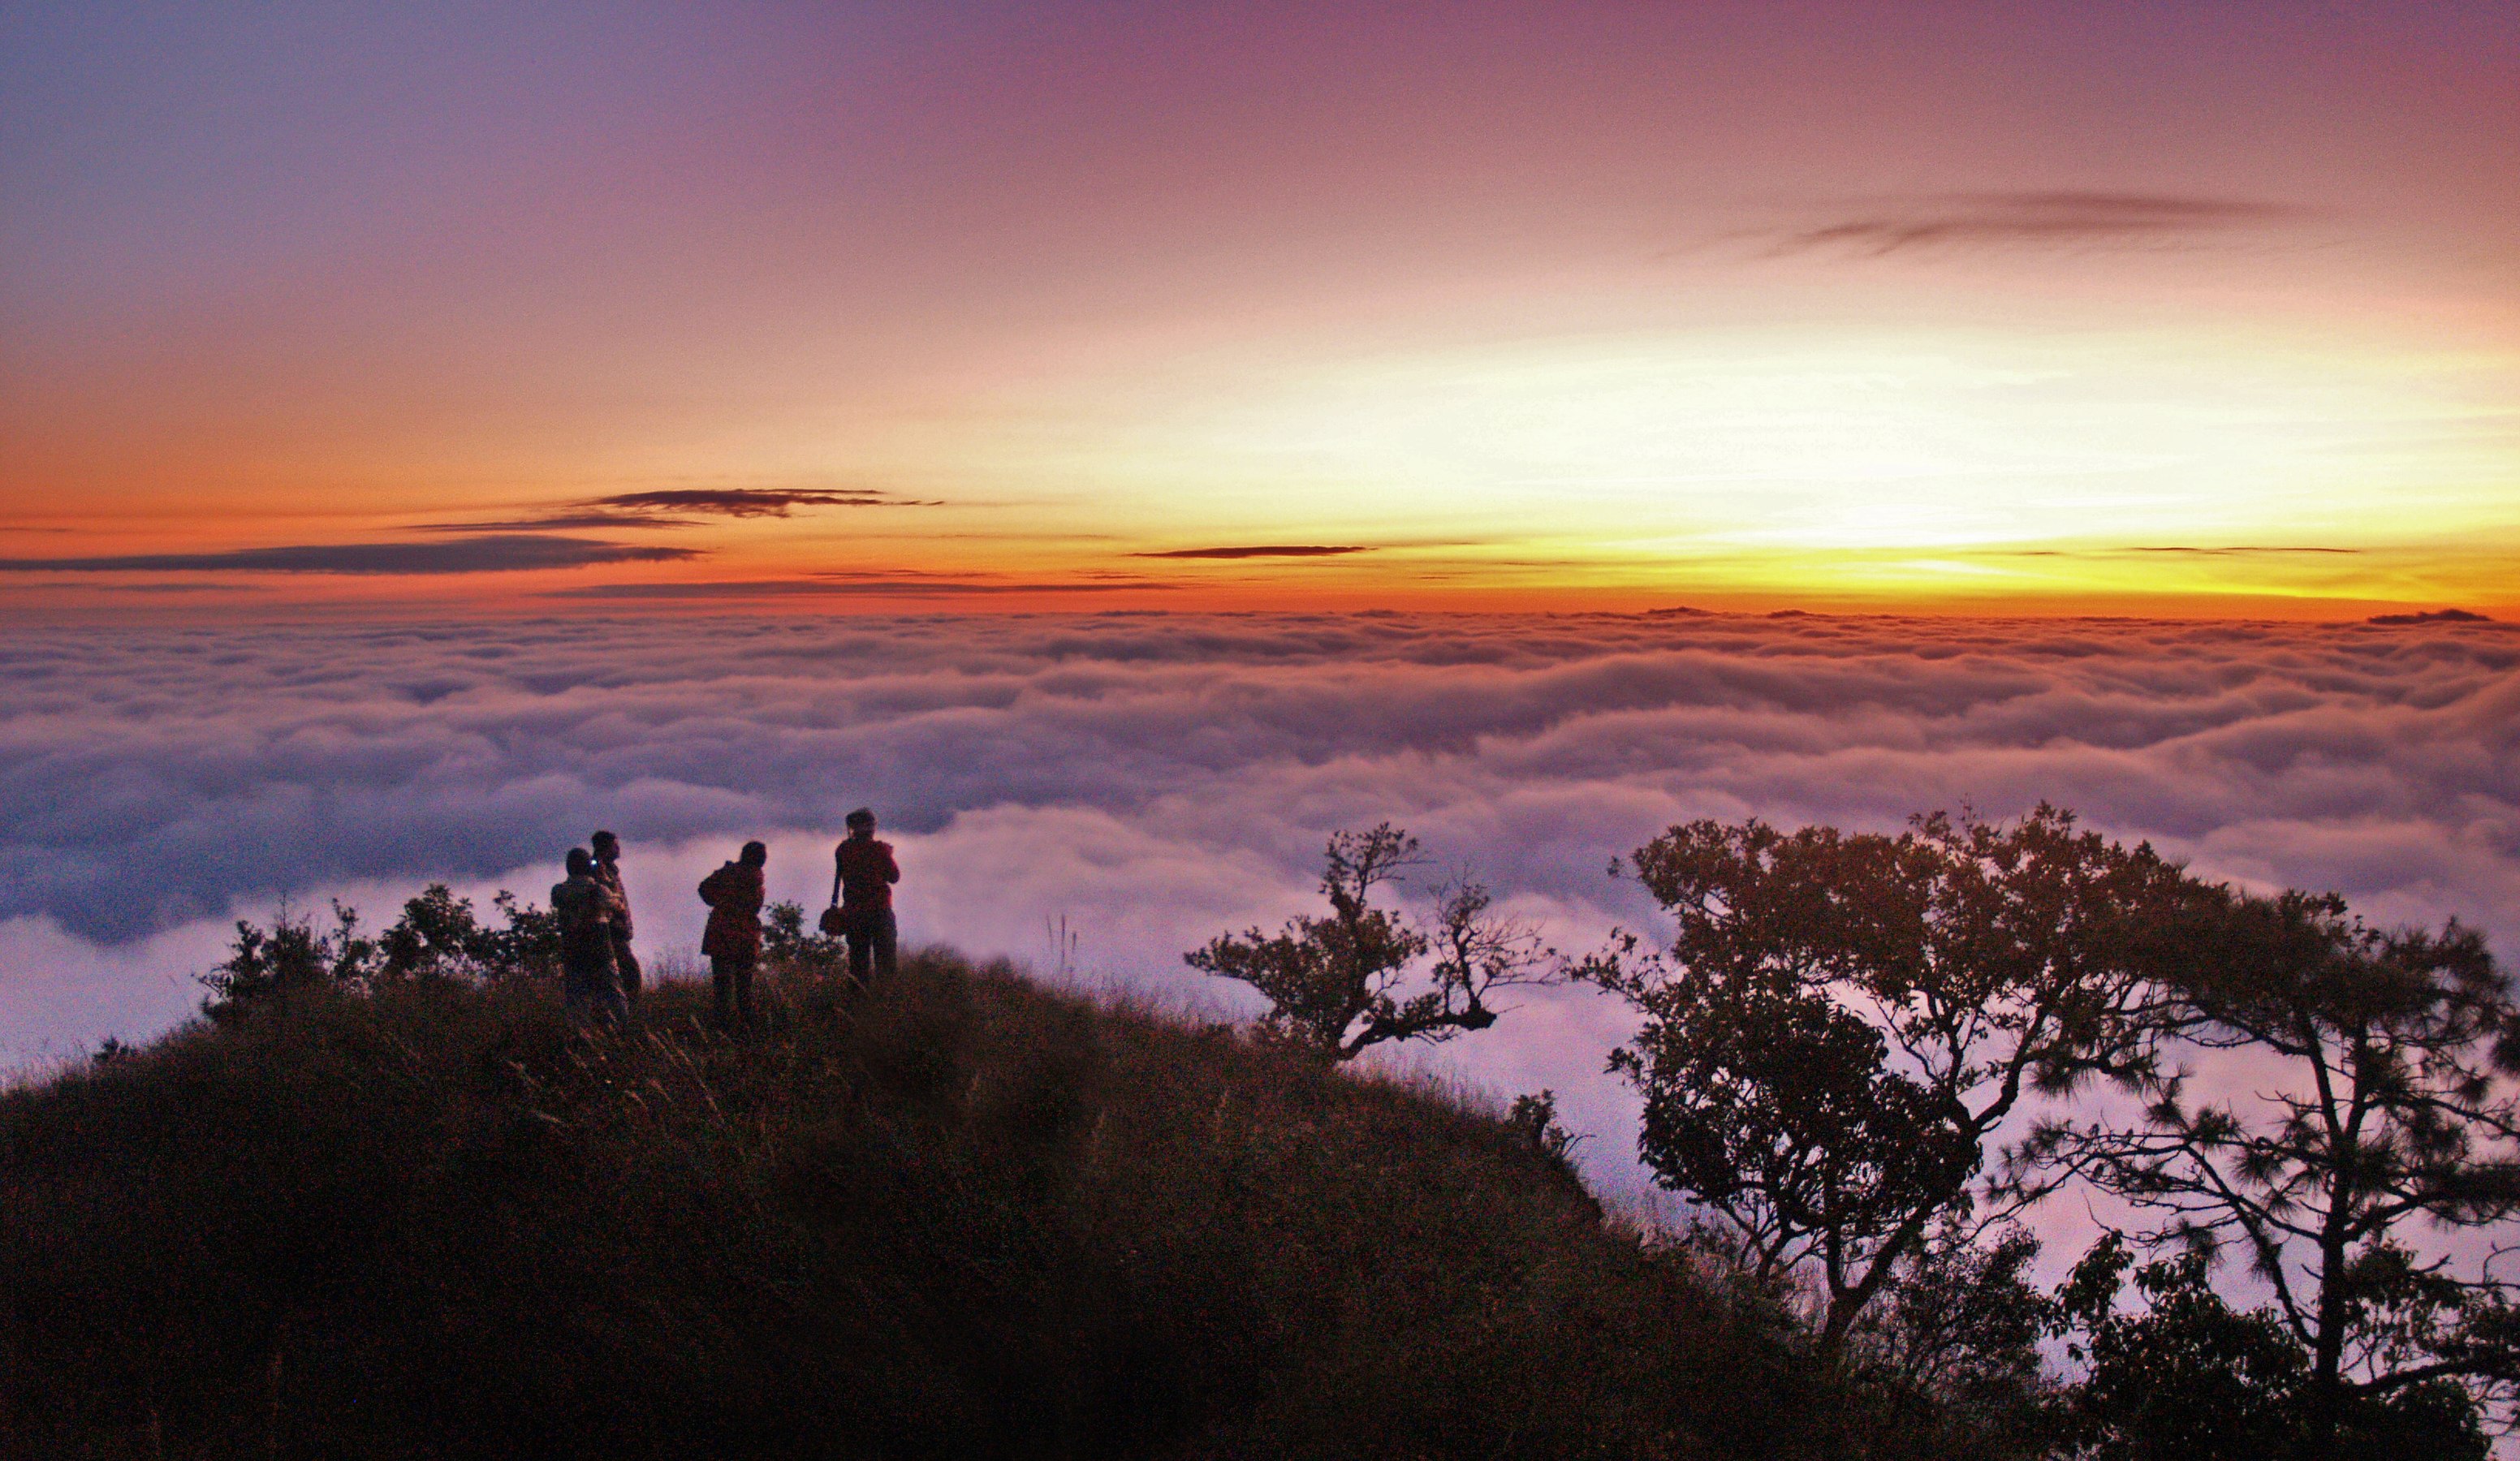 Sea of clouds at Doi Langka Noi and Doi Langka Luang, Khun Chae National Park, Chiang Rai, by Patipath #2